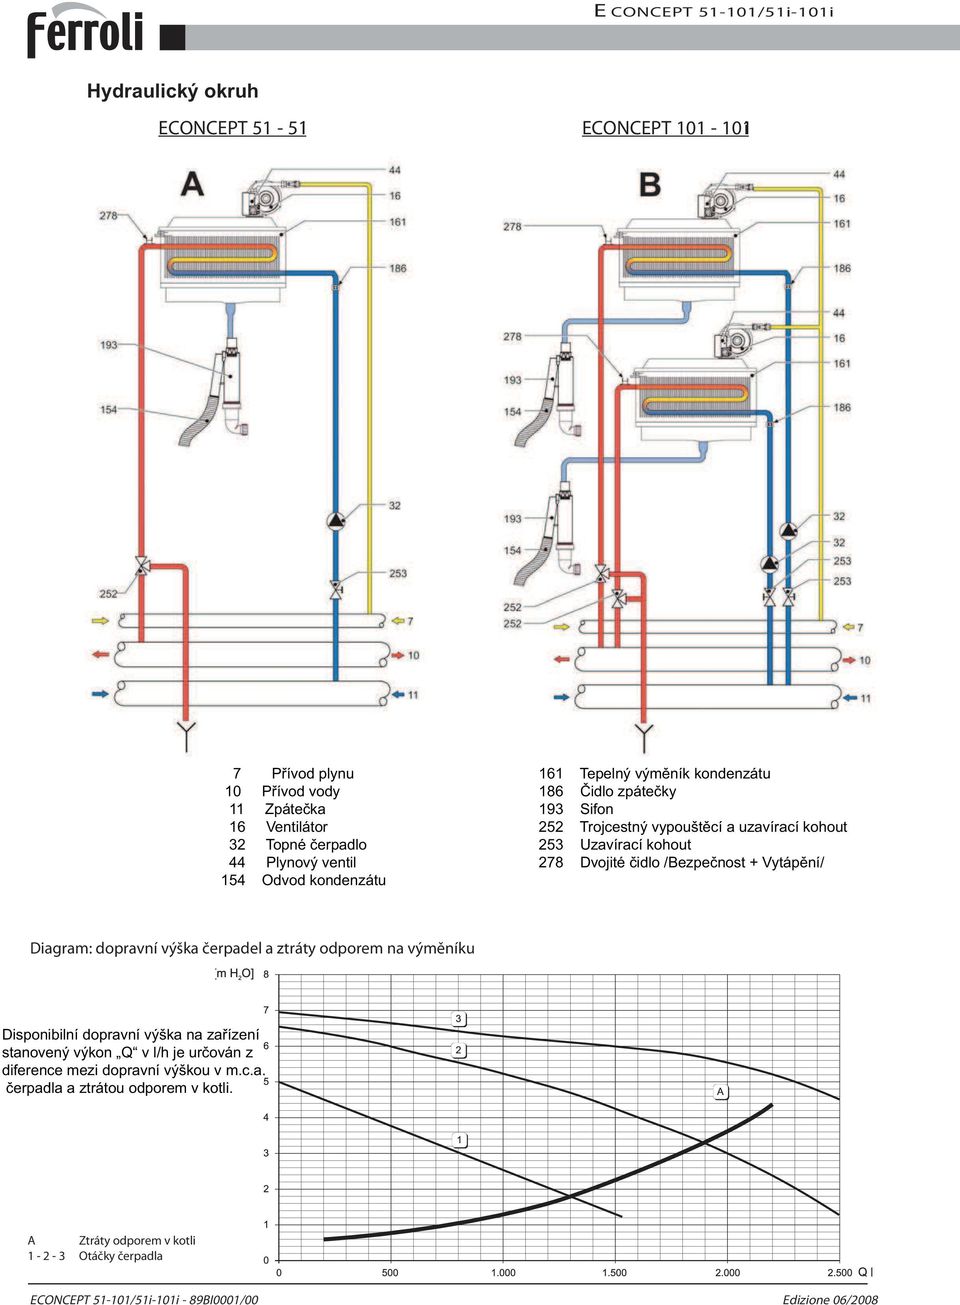 Vytápění/ Diagram: dopravní výška čerpadel a ztráty odporem na výměníku Disponibilní dopravní výška na zařízení stanovený výkon Q v l/h je určován z